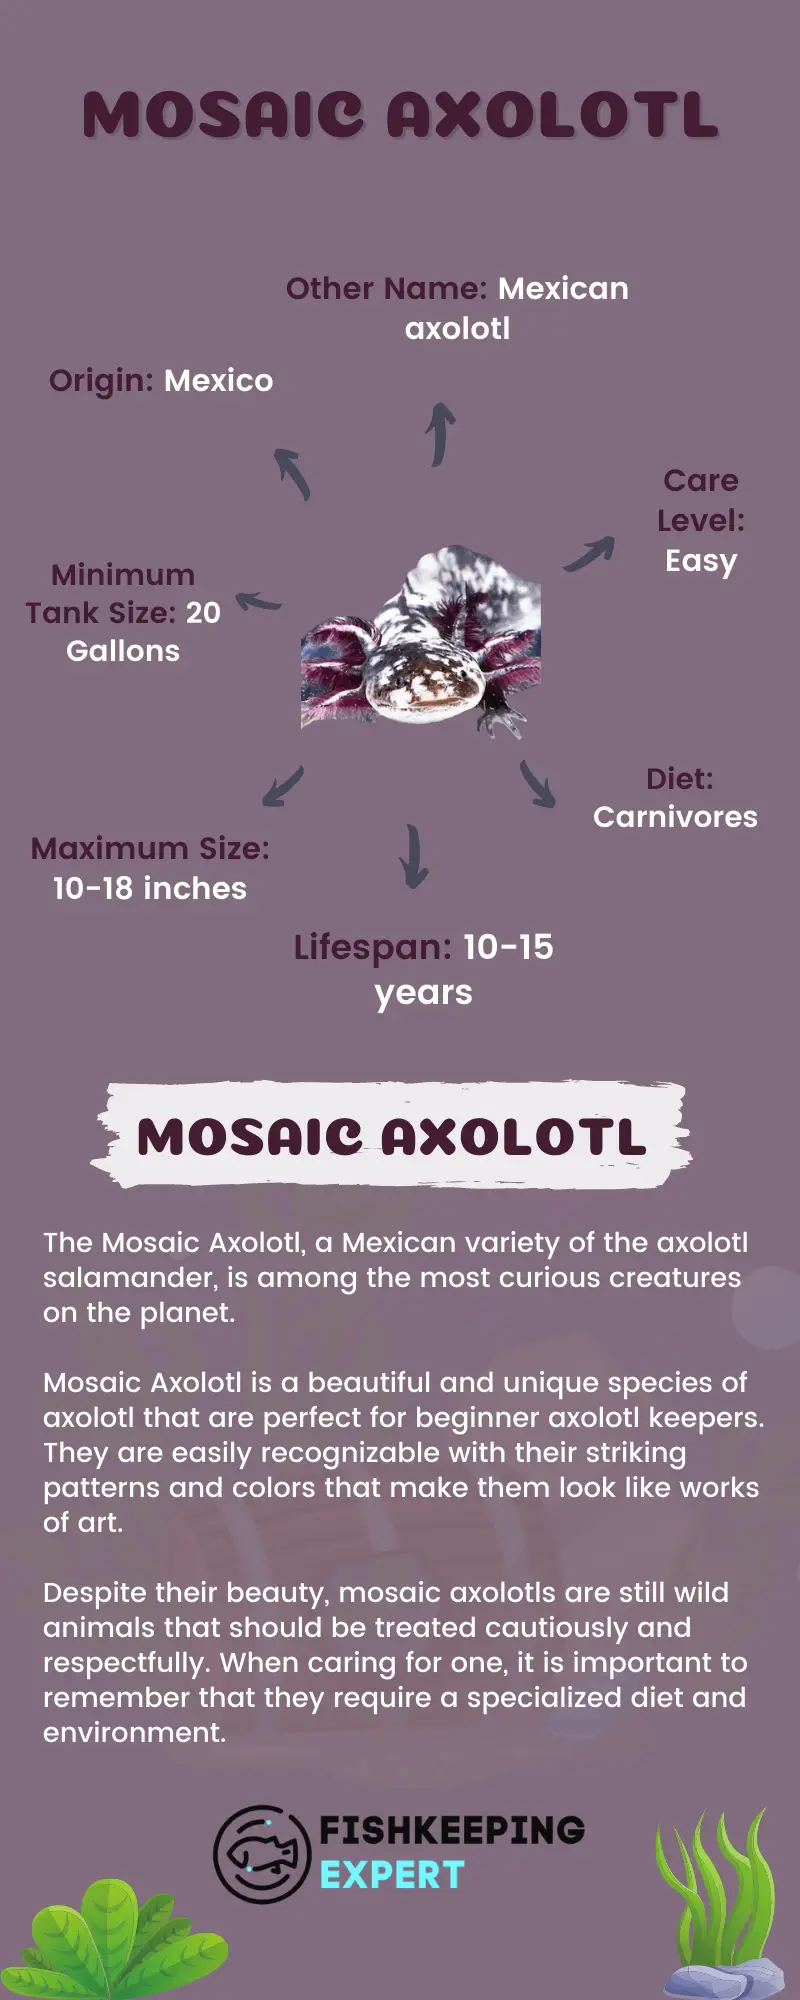 Mosaic-Axolotl